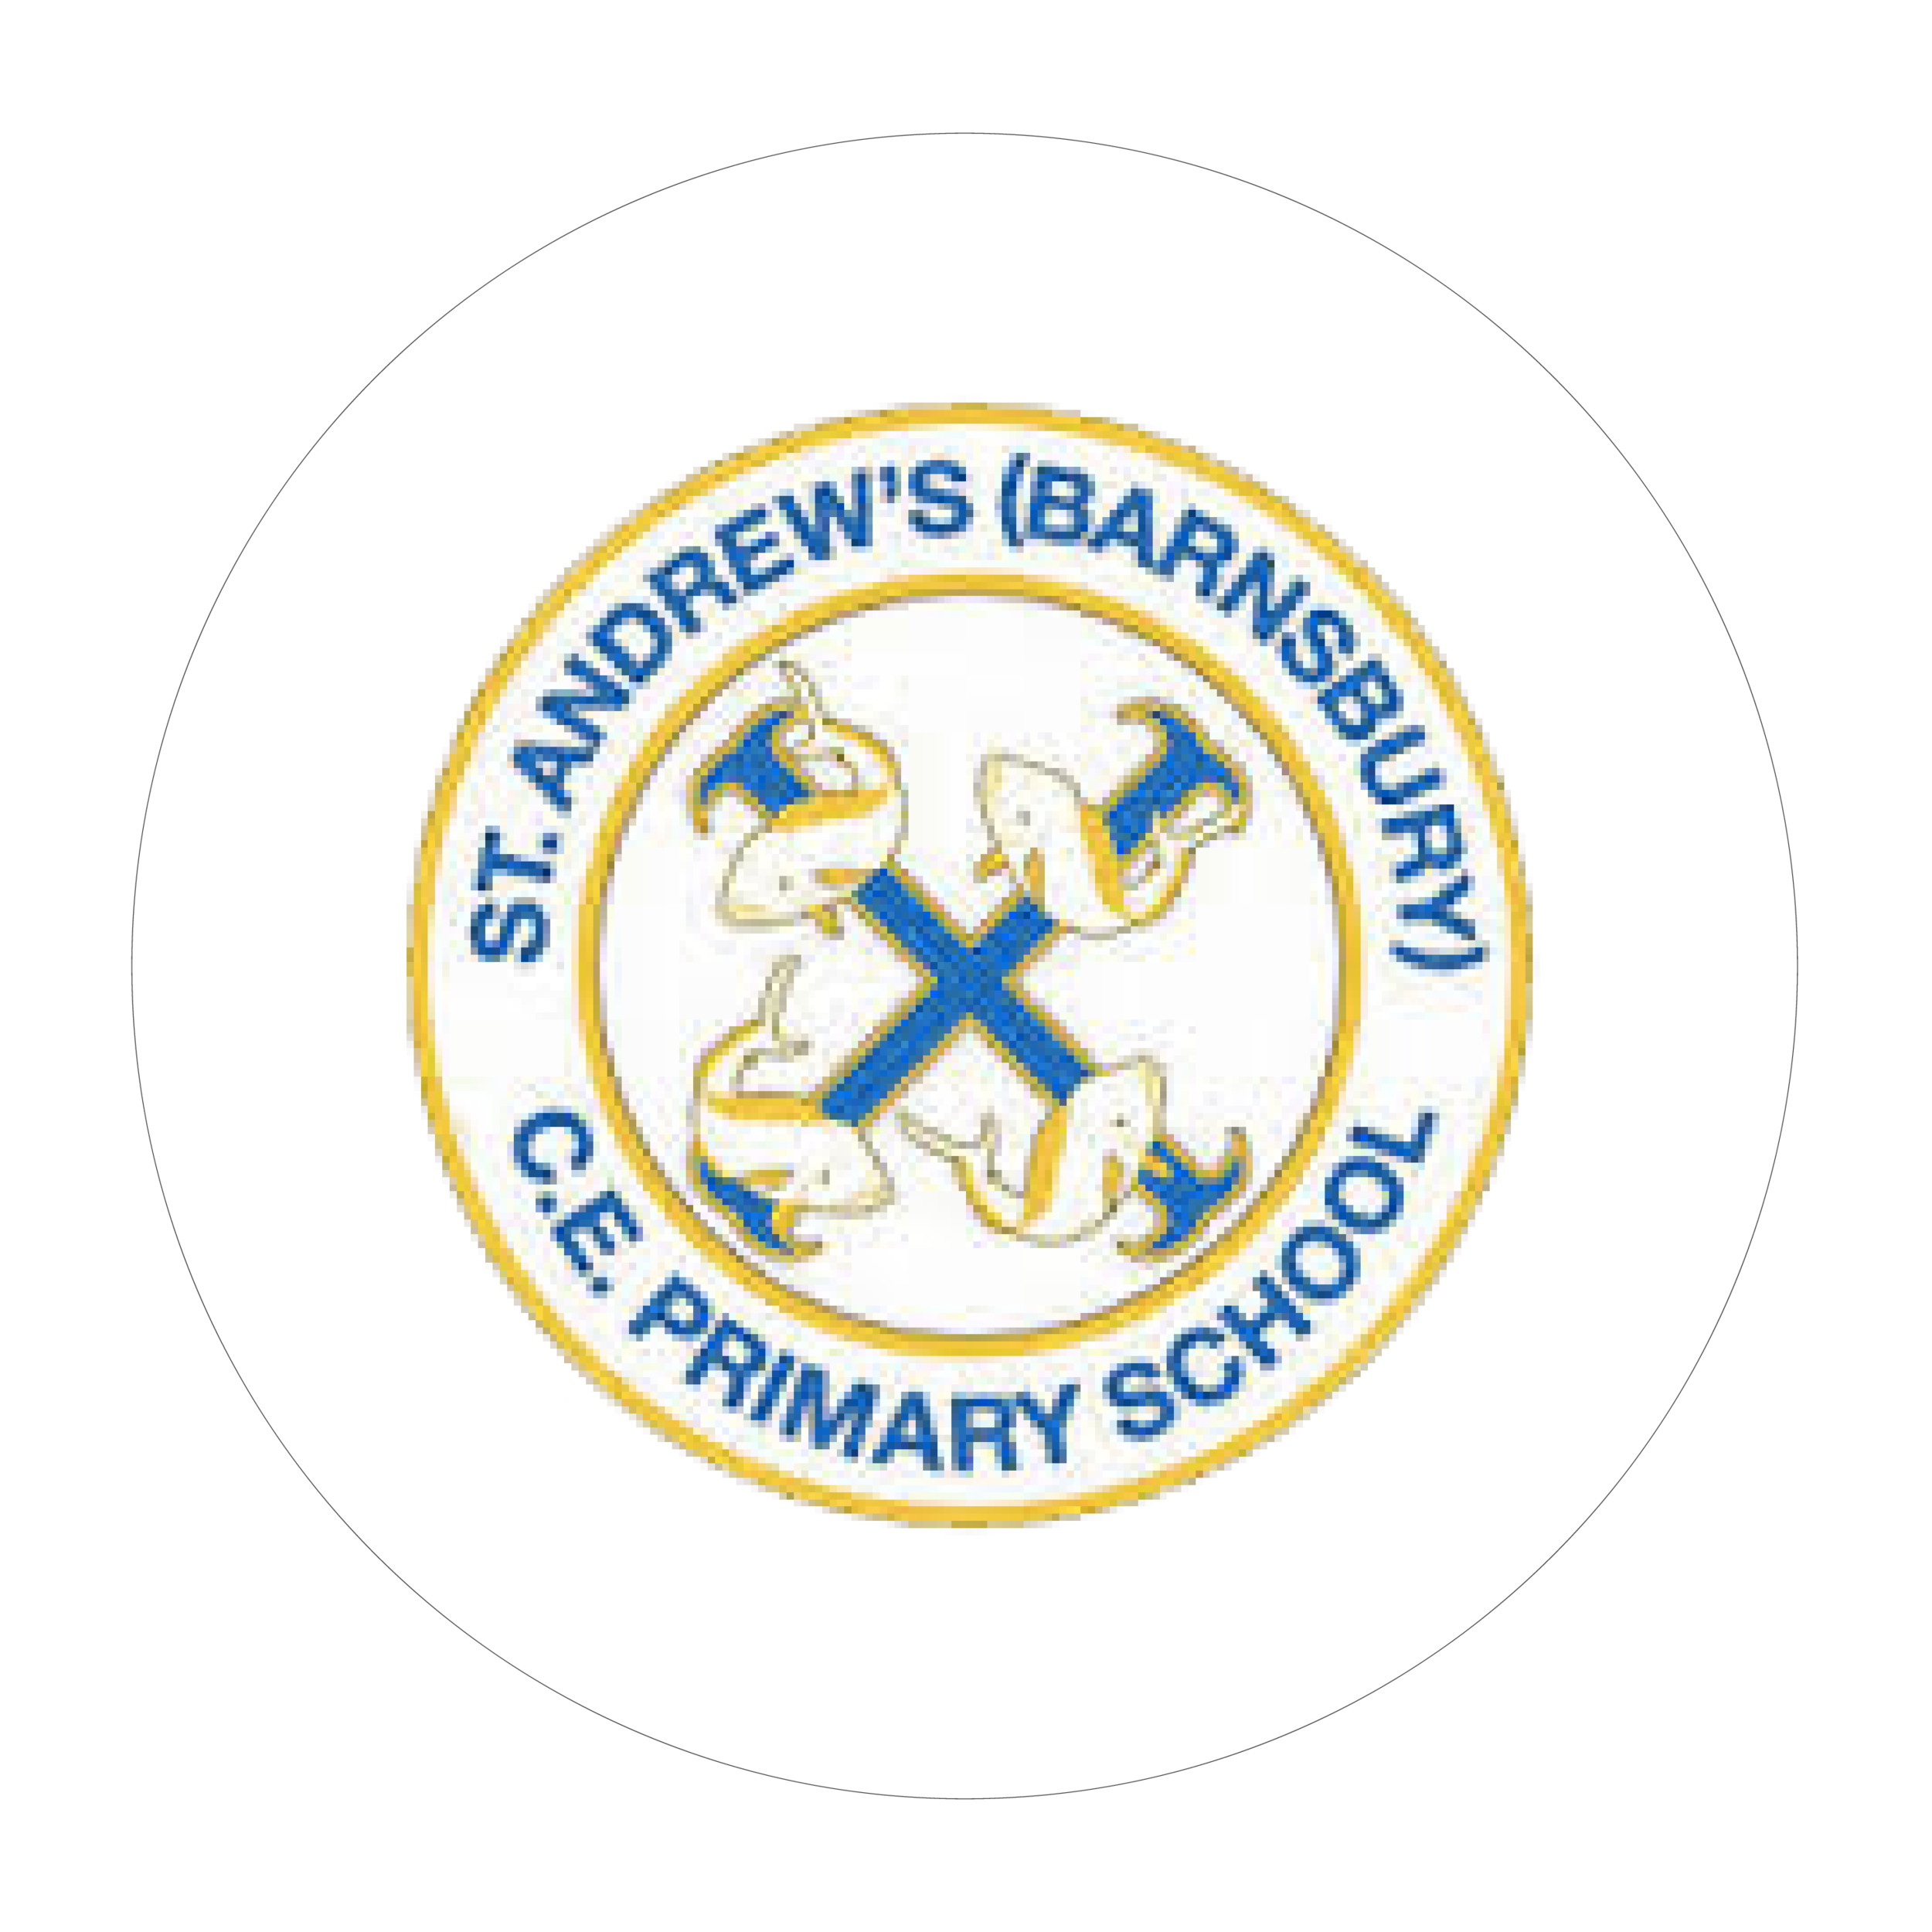 St Andrew’s (Barnsbury) CE Primary School